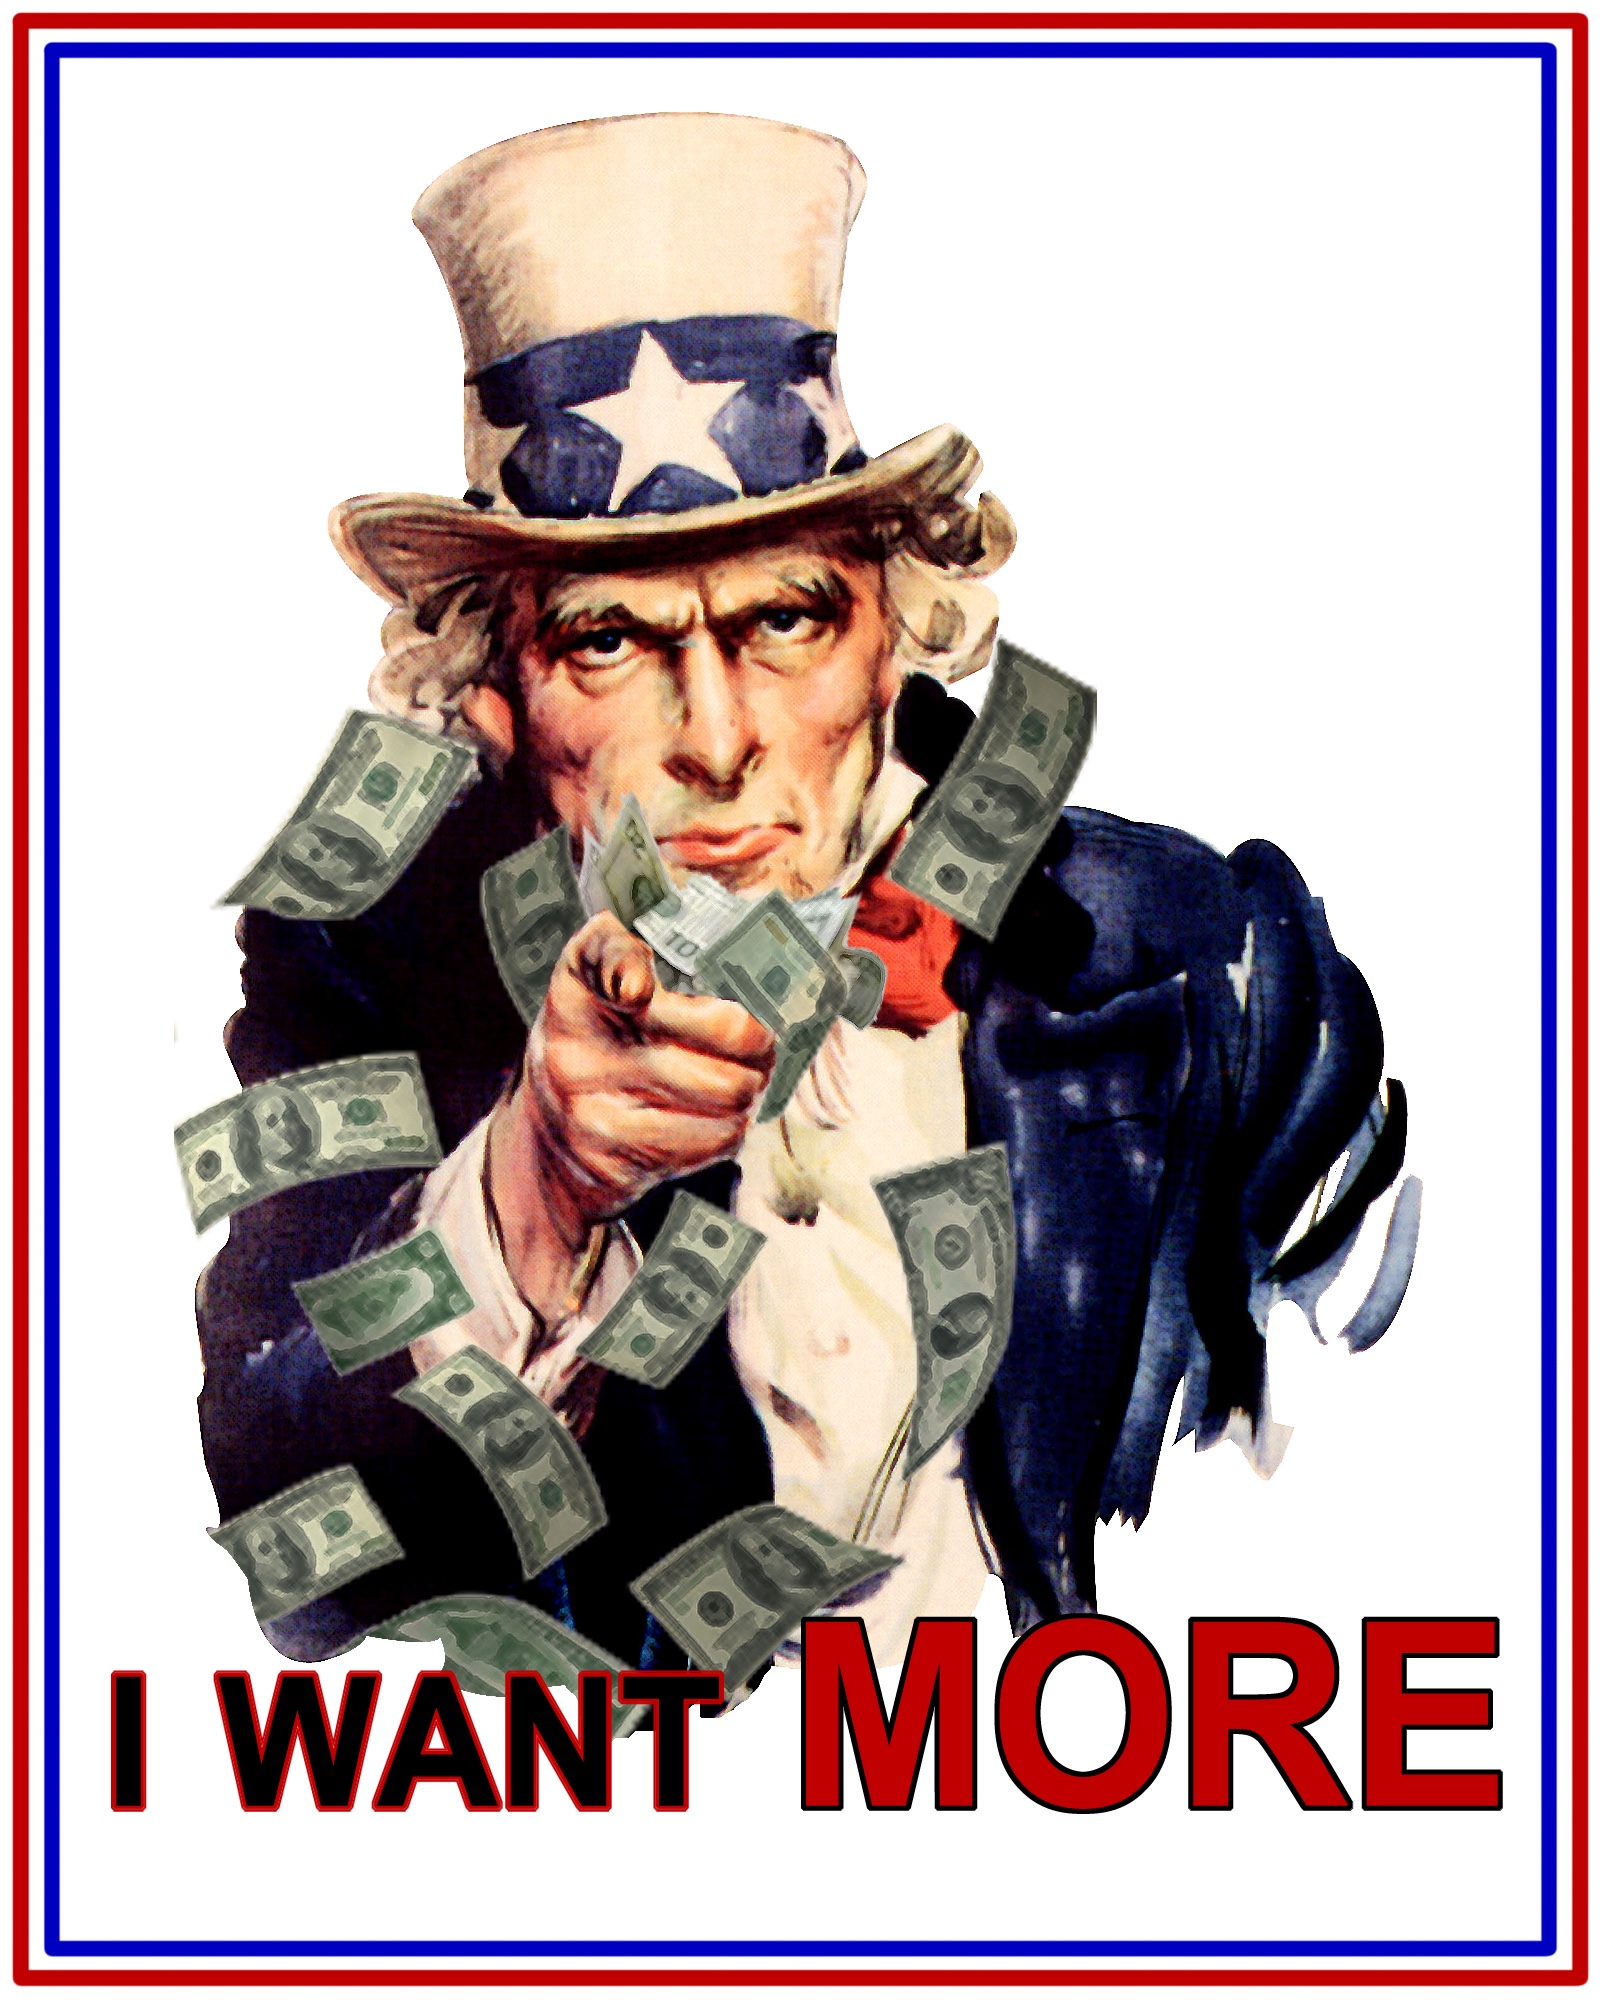 Bild: Uncle Sam-Bild mit der Forderung «I WANT MORE»